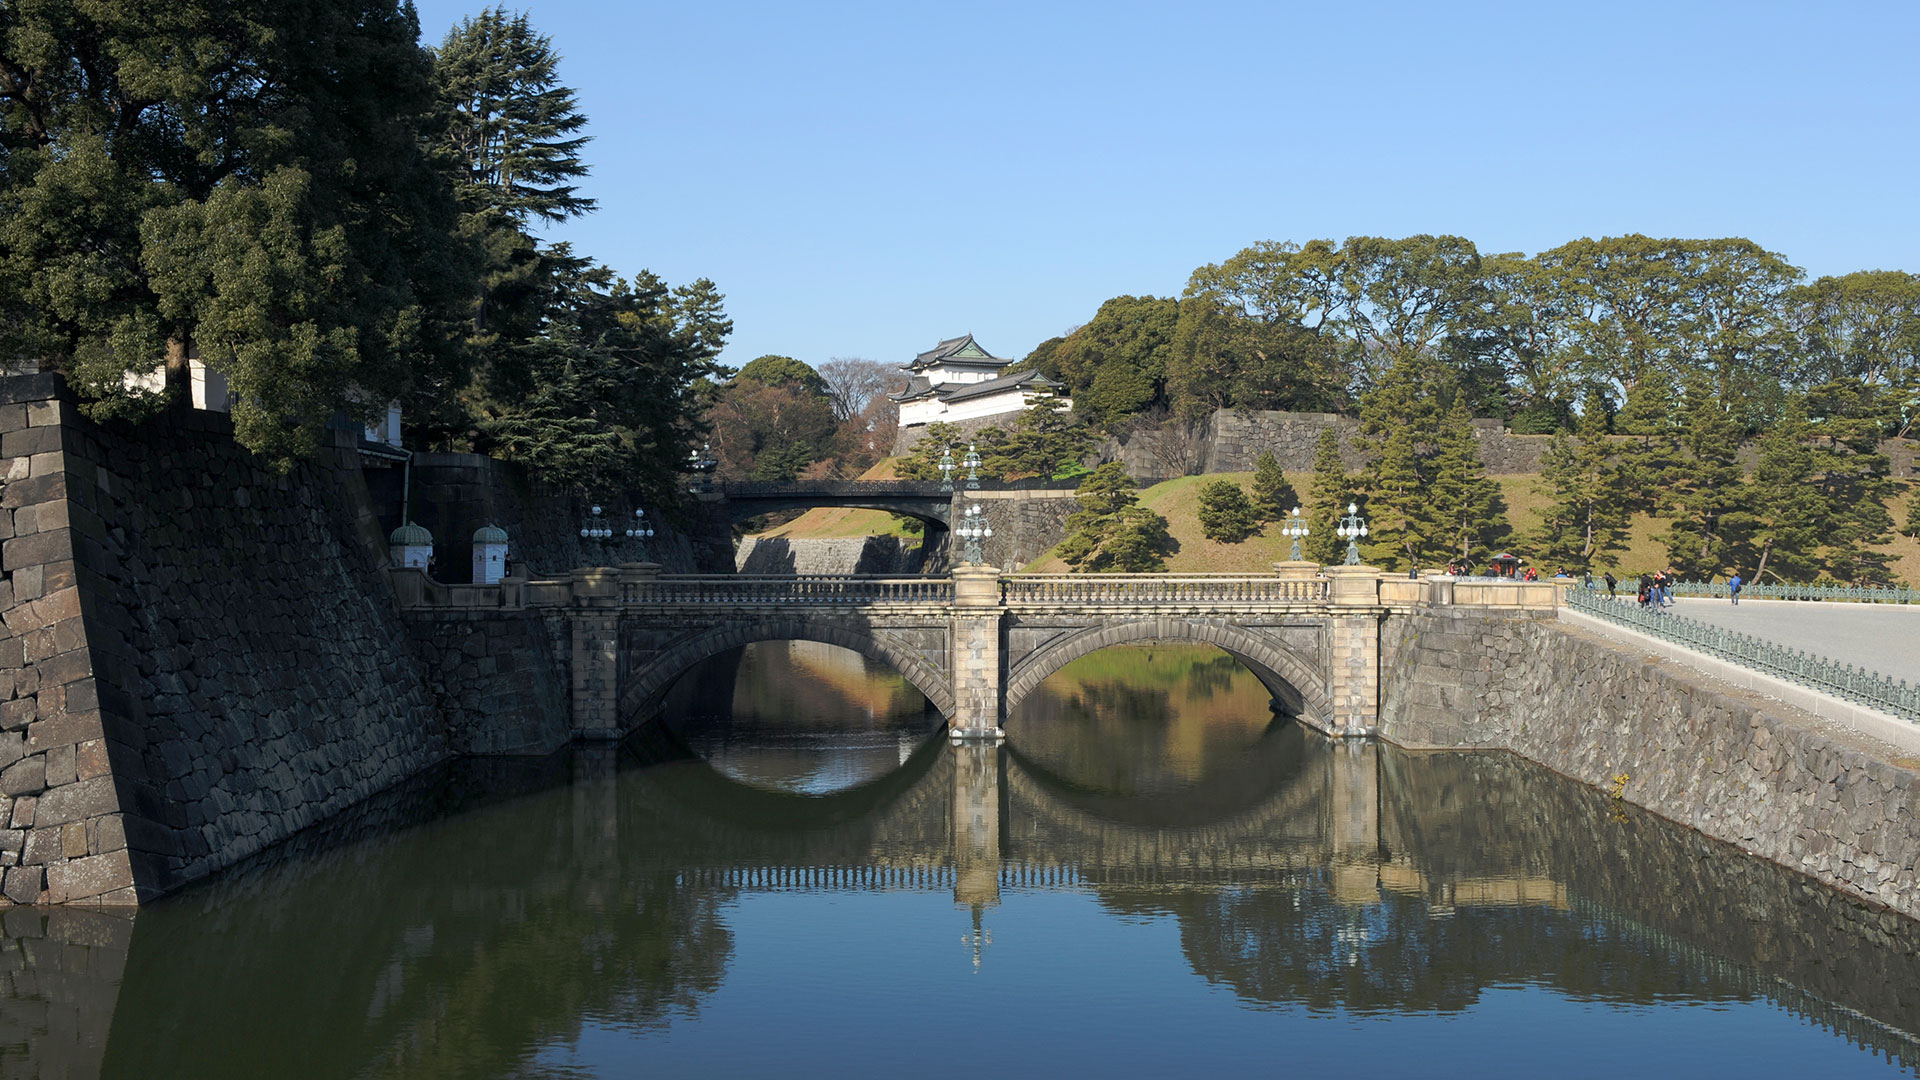 tokyo royal palace tour